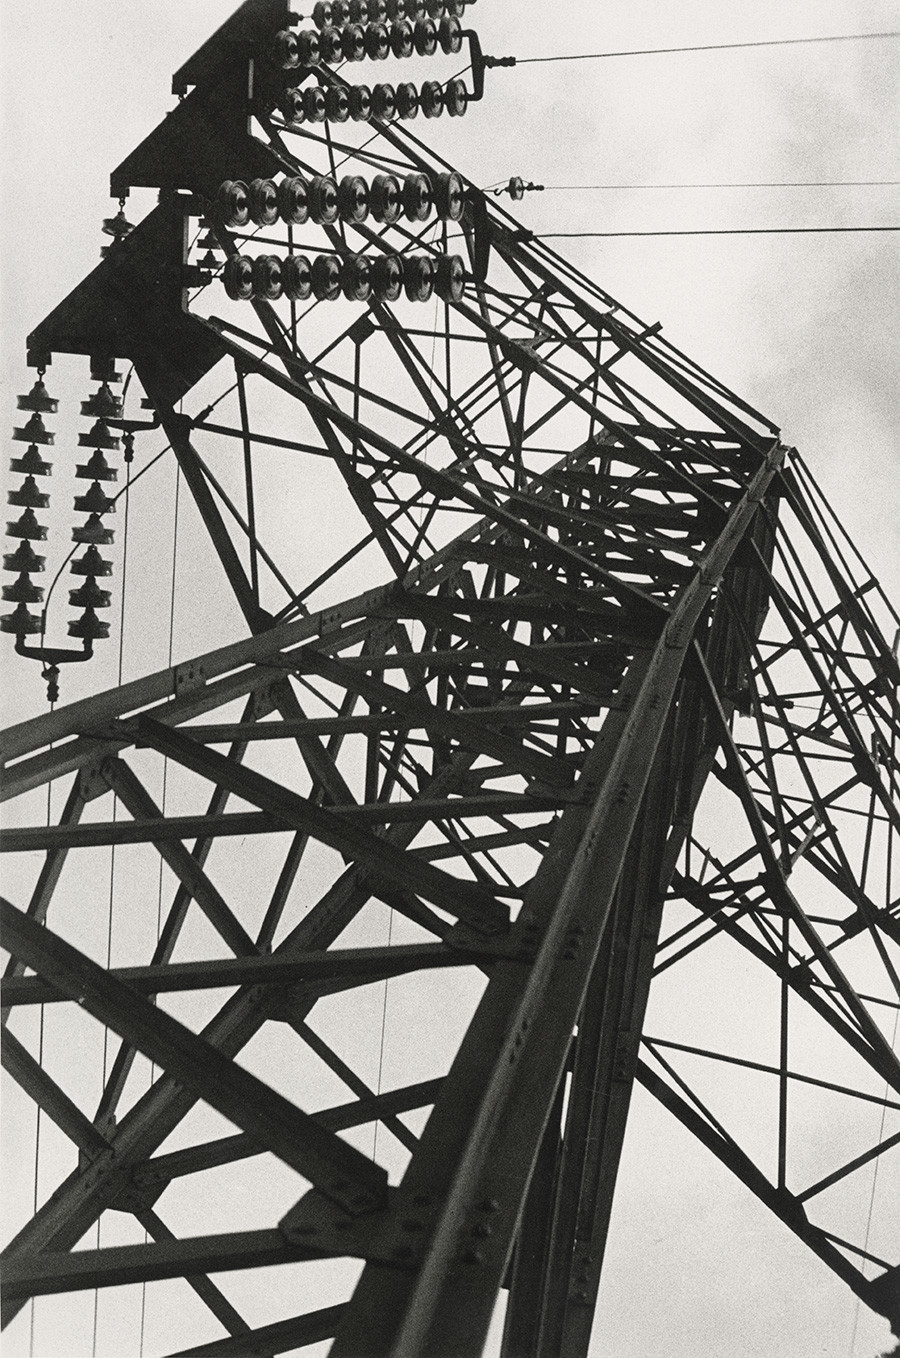 Мачта линии электропередач в Москве, 1929. Фотография Александра Родченко из коллекции Мультимедиа Арт Музея